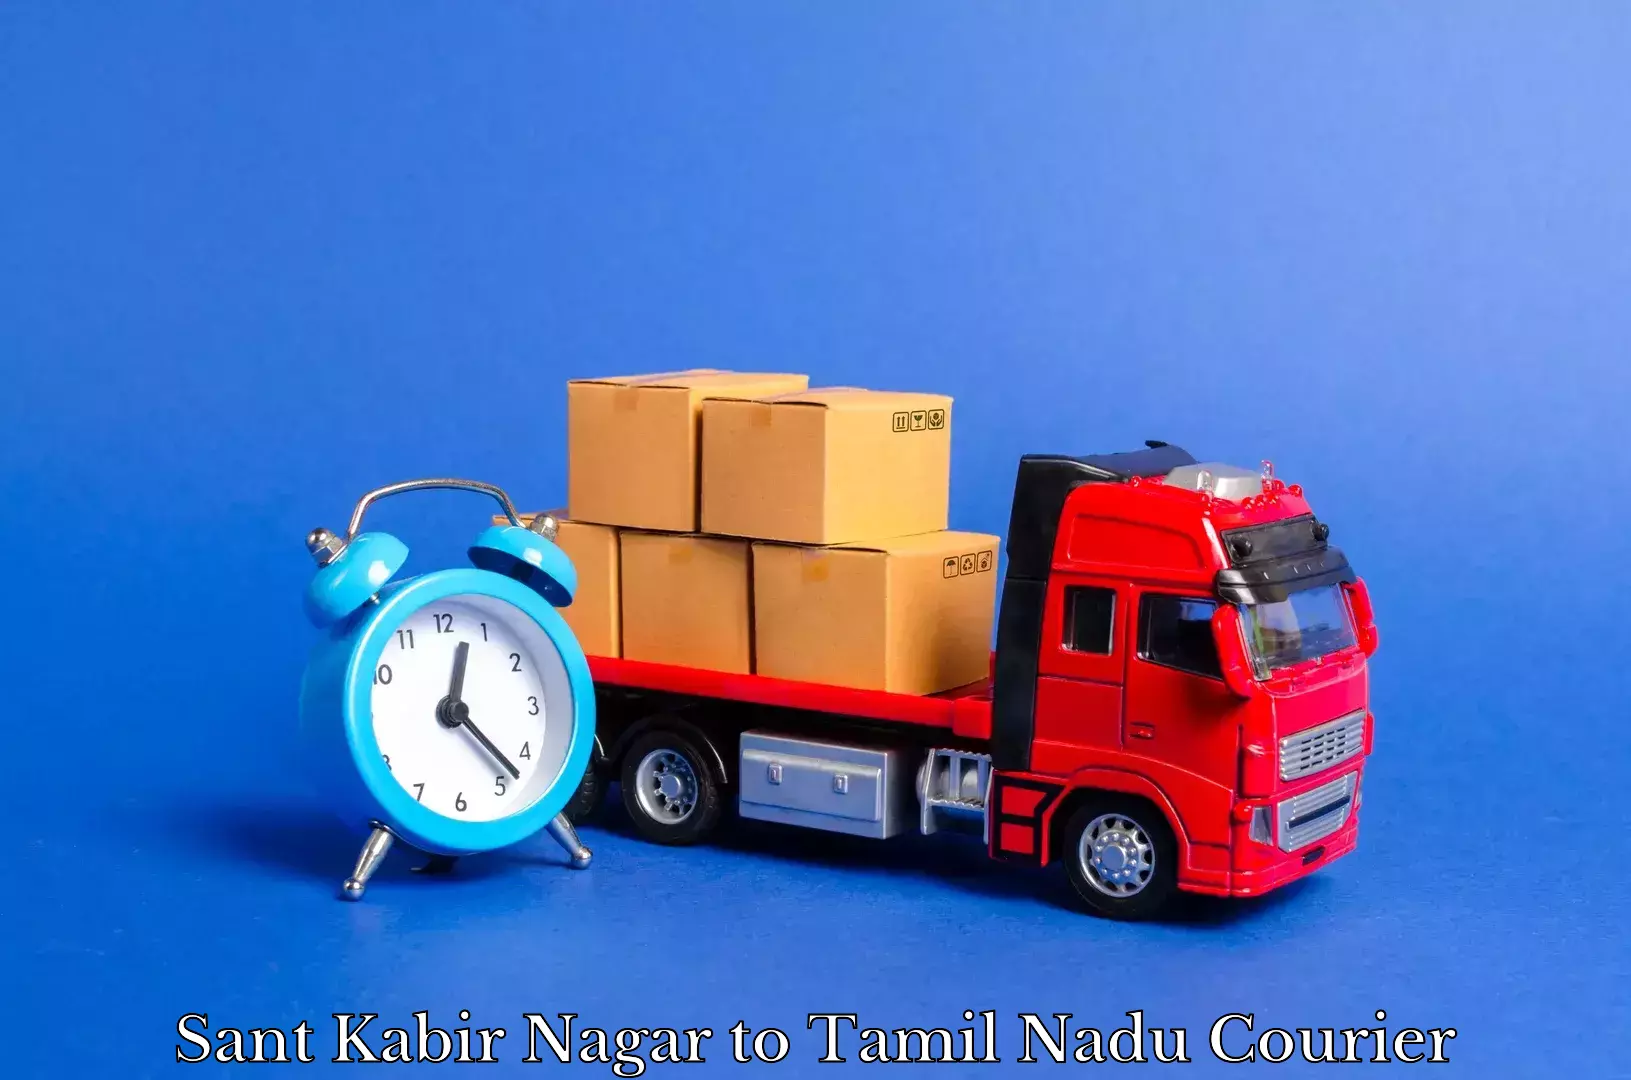 Professional furniture movers Sant Kabir Nagar to Anthiyur